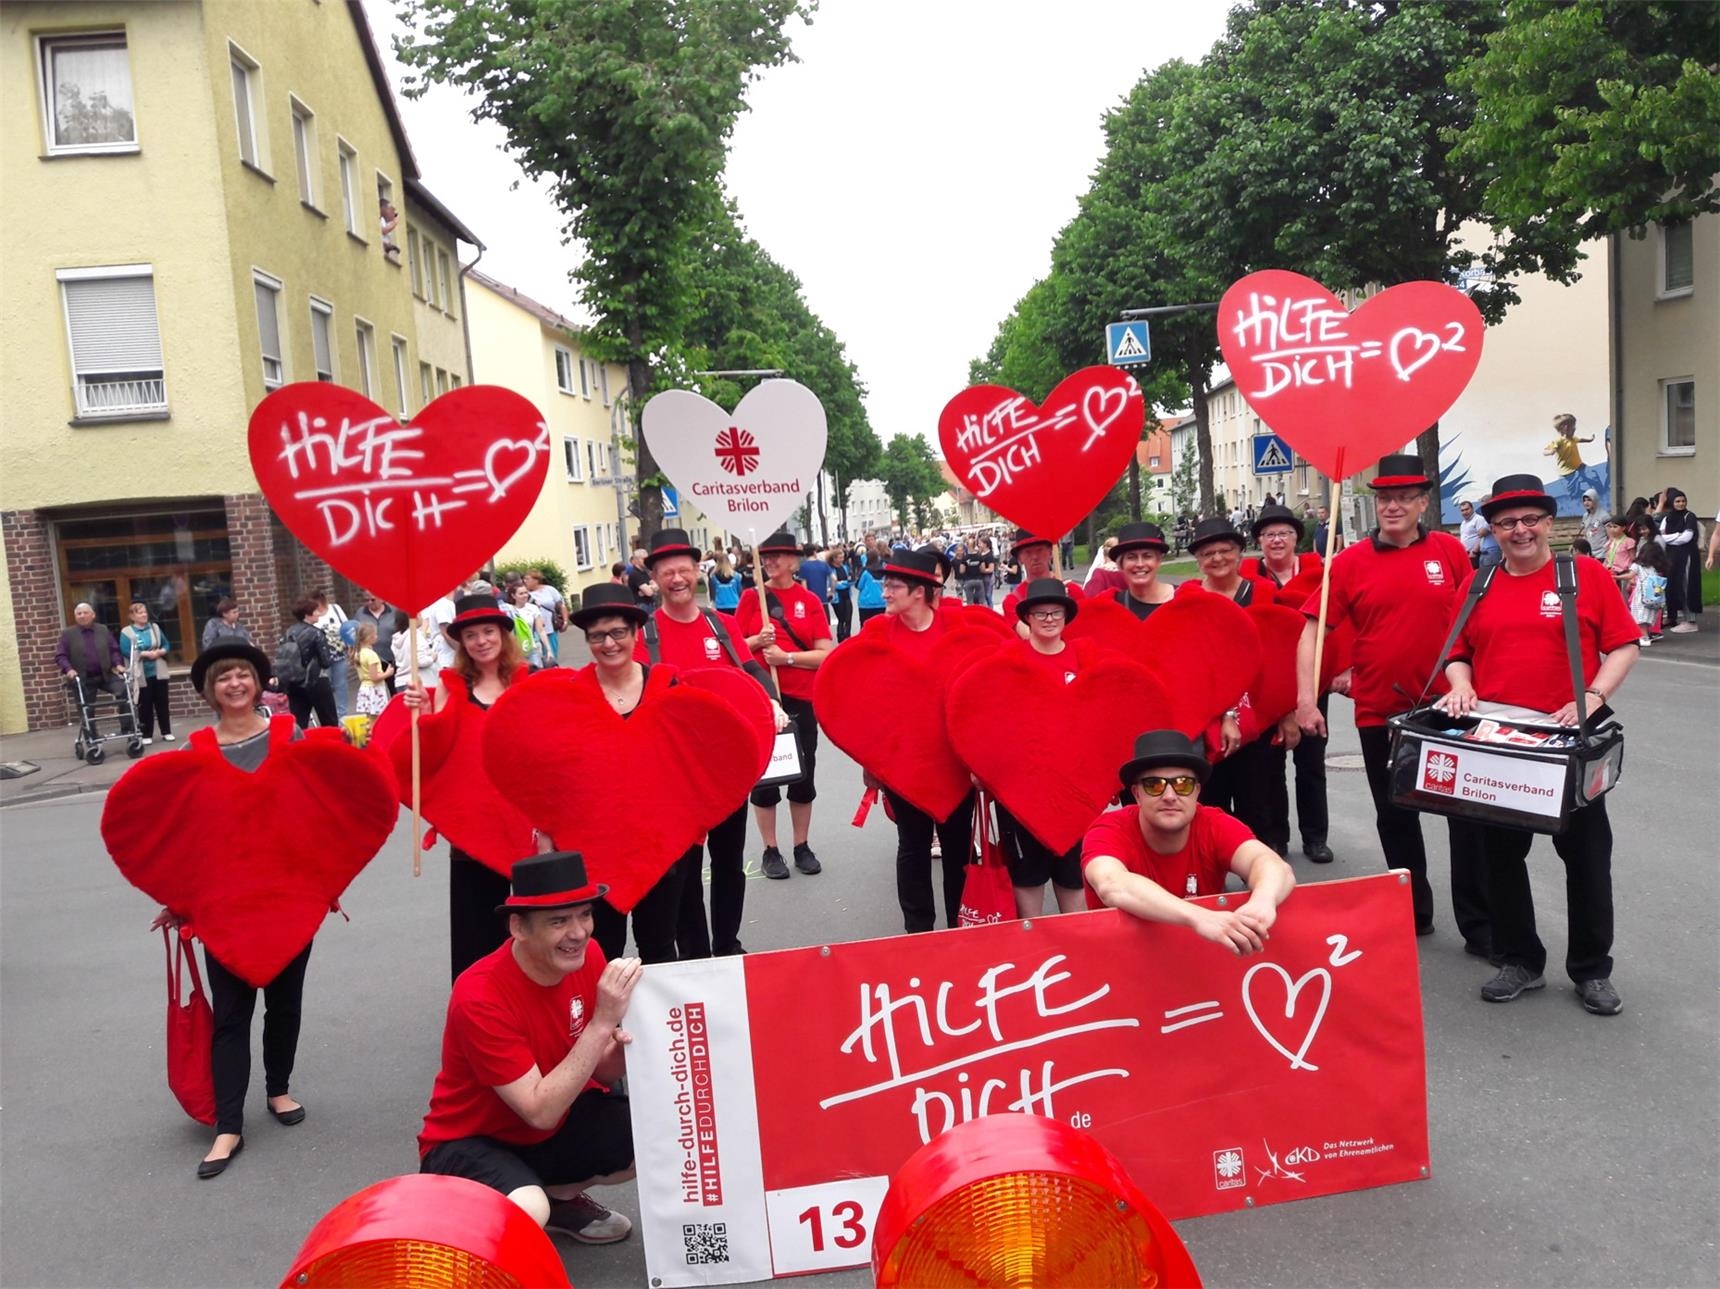 Hilfe durch Dich: Herzen auf dem Hessentag (Caritas Brilon)